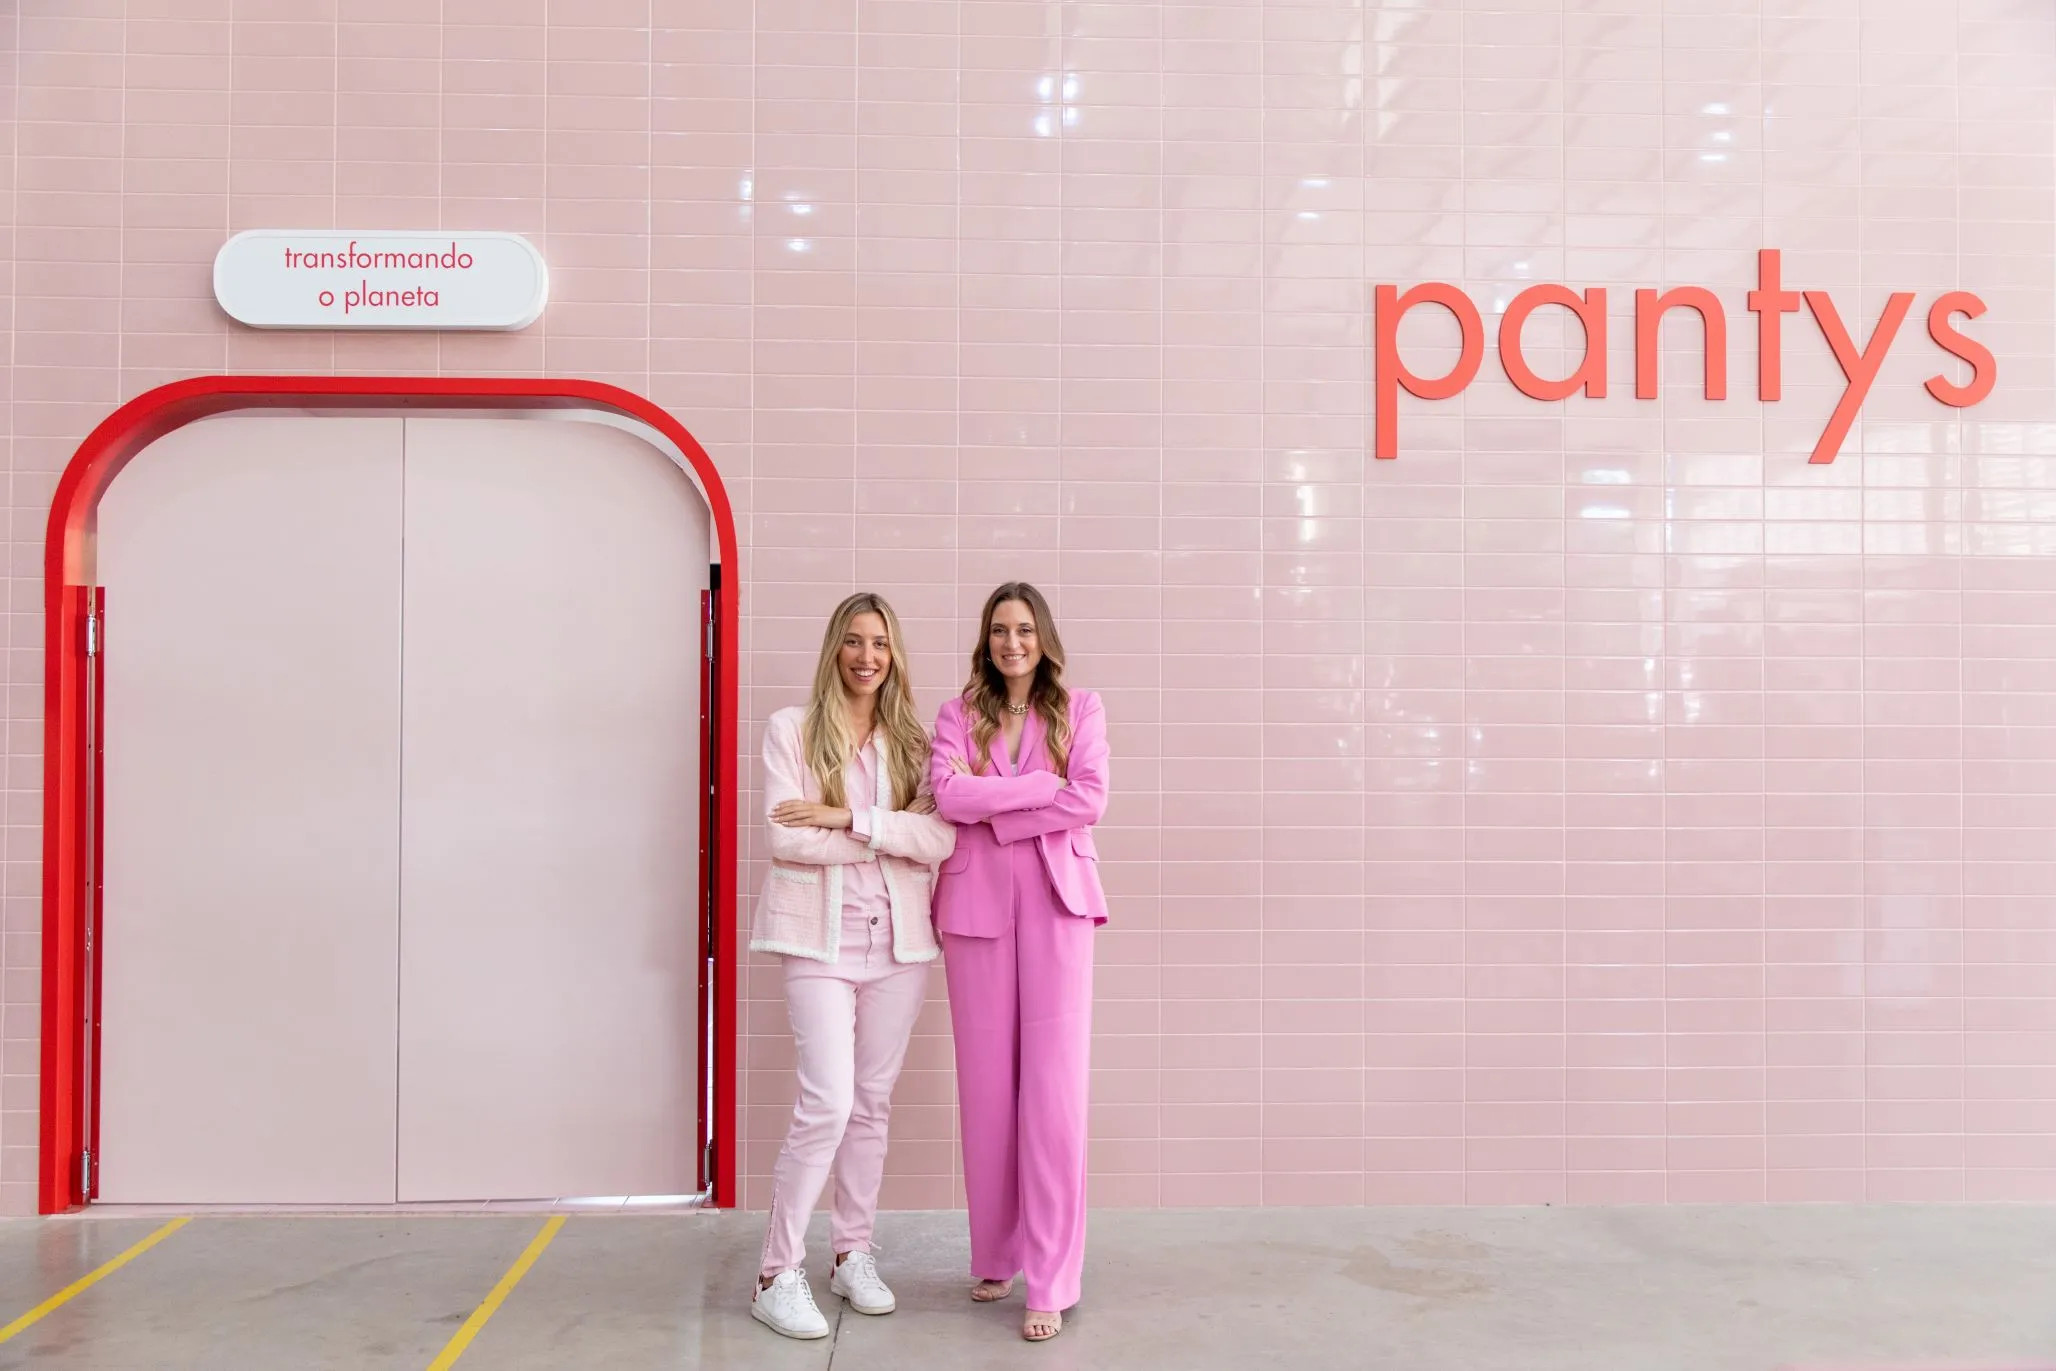 Duas mulheres brancas com o cabelo liso e loiro estão usando roupa cor-de-rosa, localizadas de pé em frente a uma parede cor-de-rosa claro escrito Pantys.